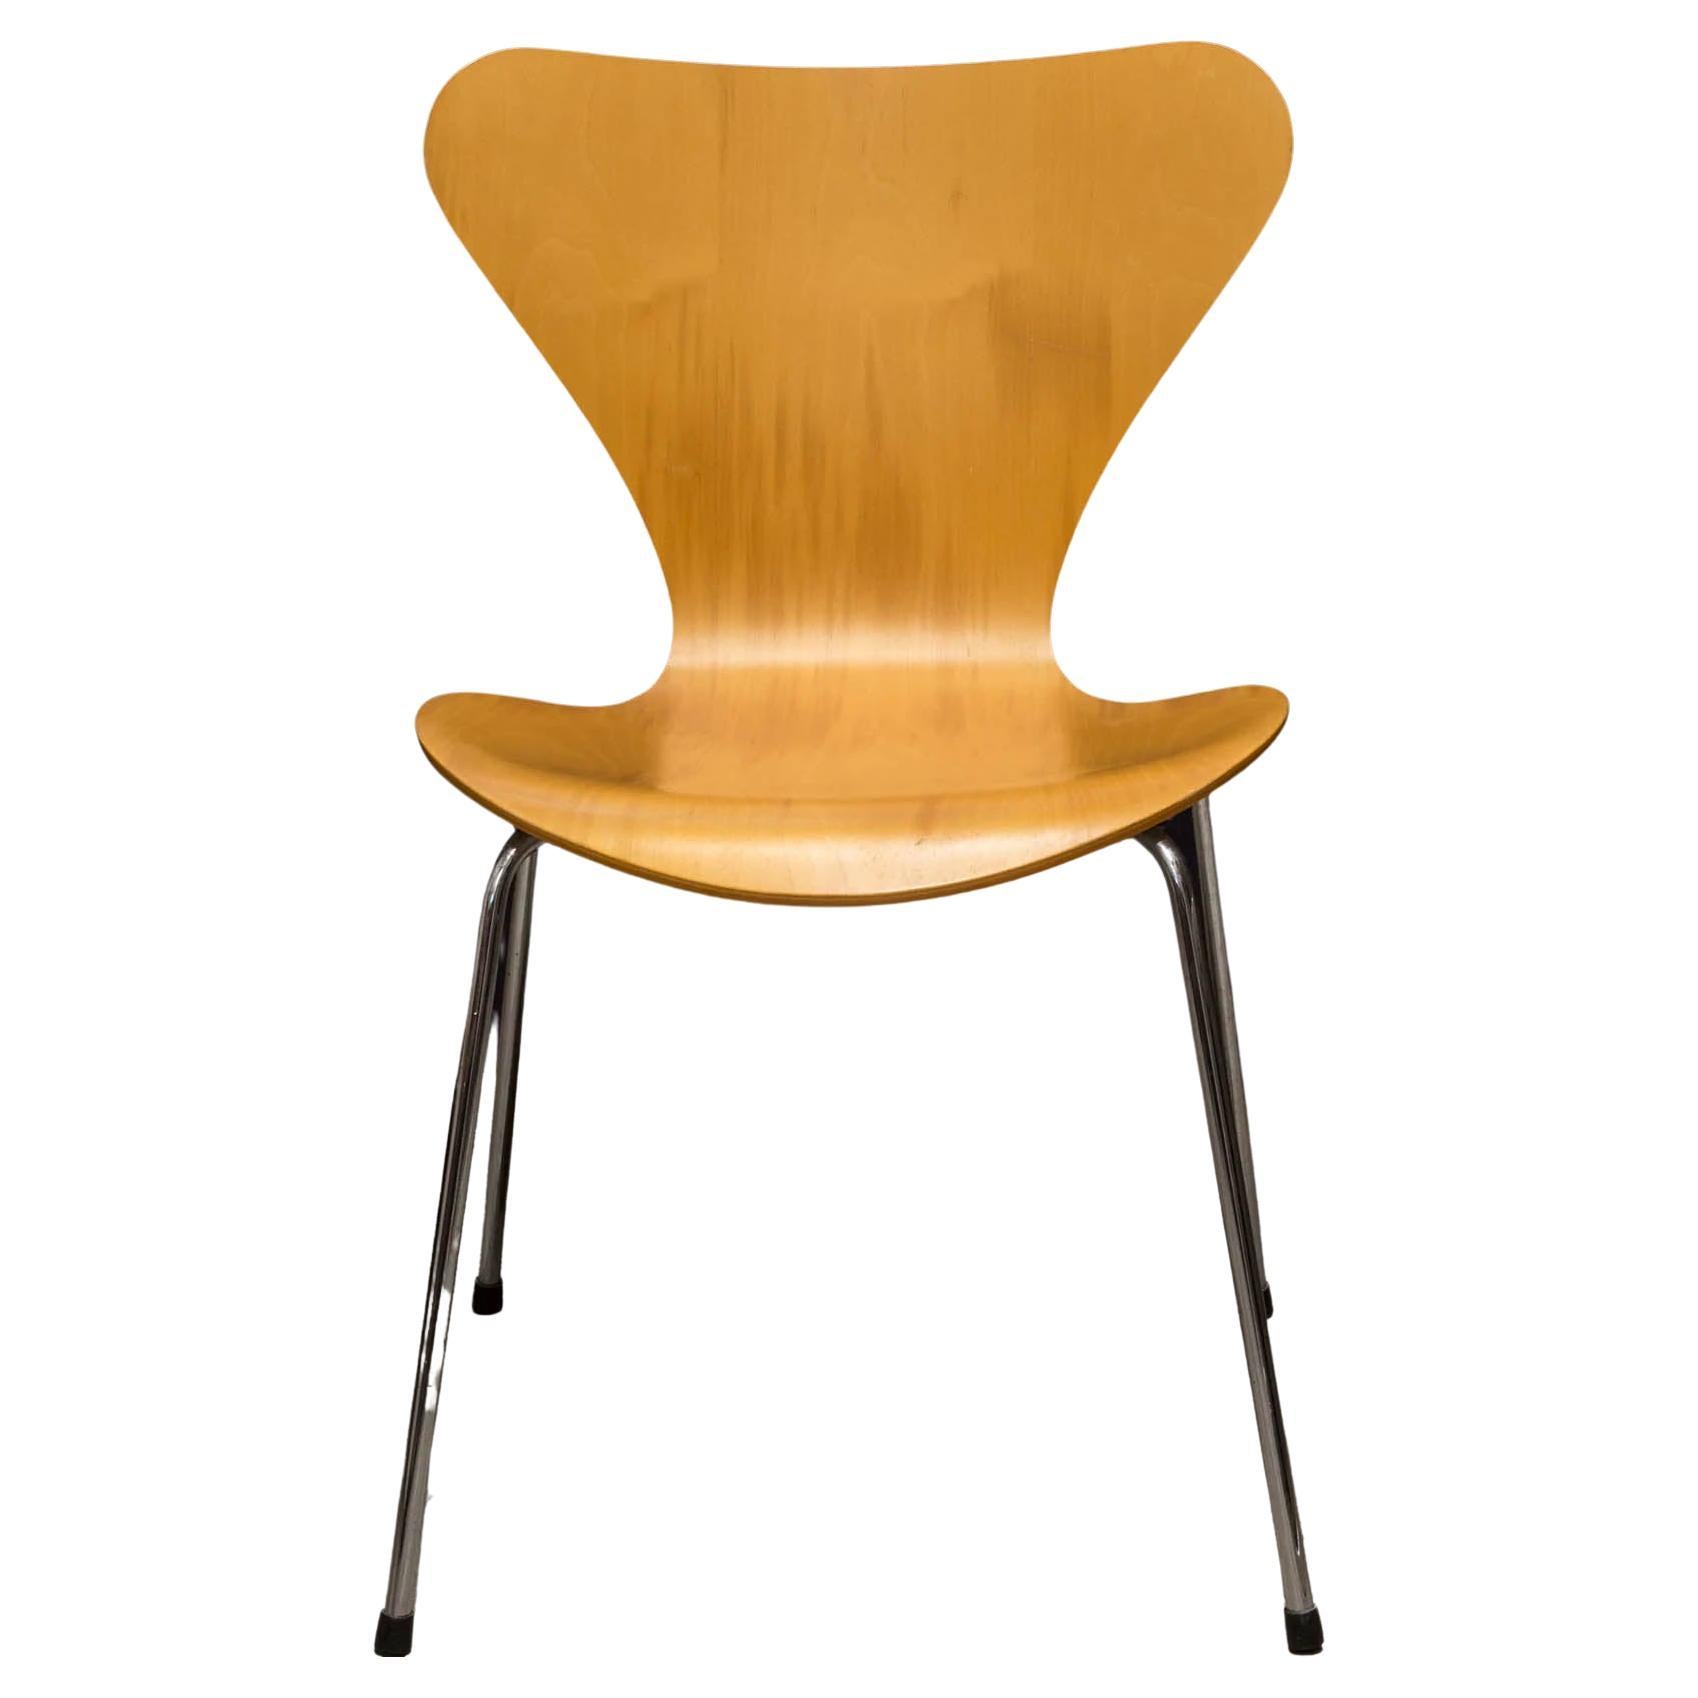 Chaise iconique du mouvement de design danois, la chaise Series 7 a été conçue par Arne Jacobsen et produite par Fritz Hansen.
Plusieurs disponibles.